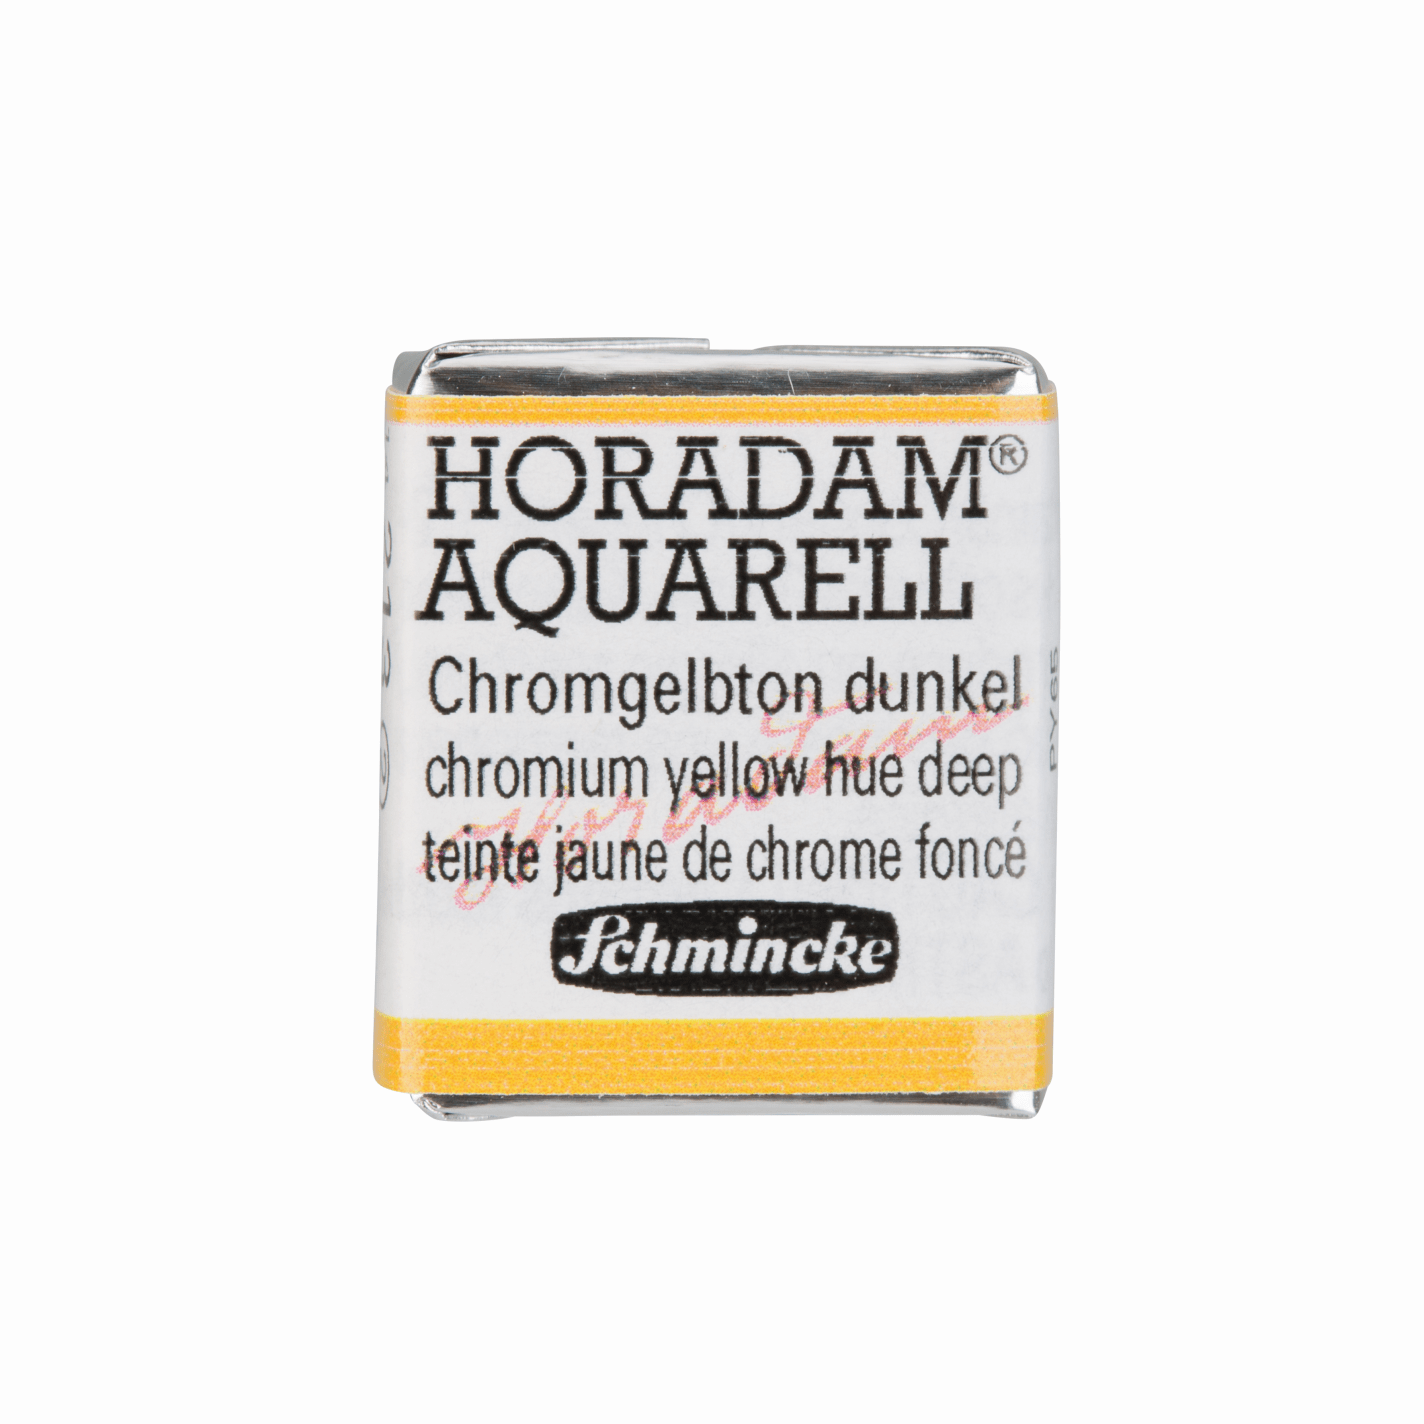 Schmincke Horadam Aquarell pans 1/2 pan Yellow Hue Deep